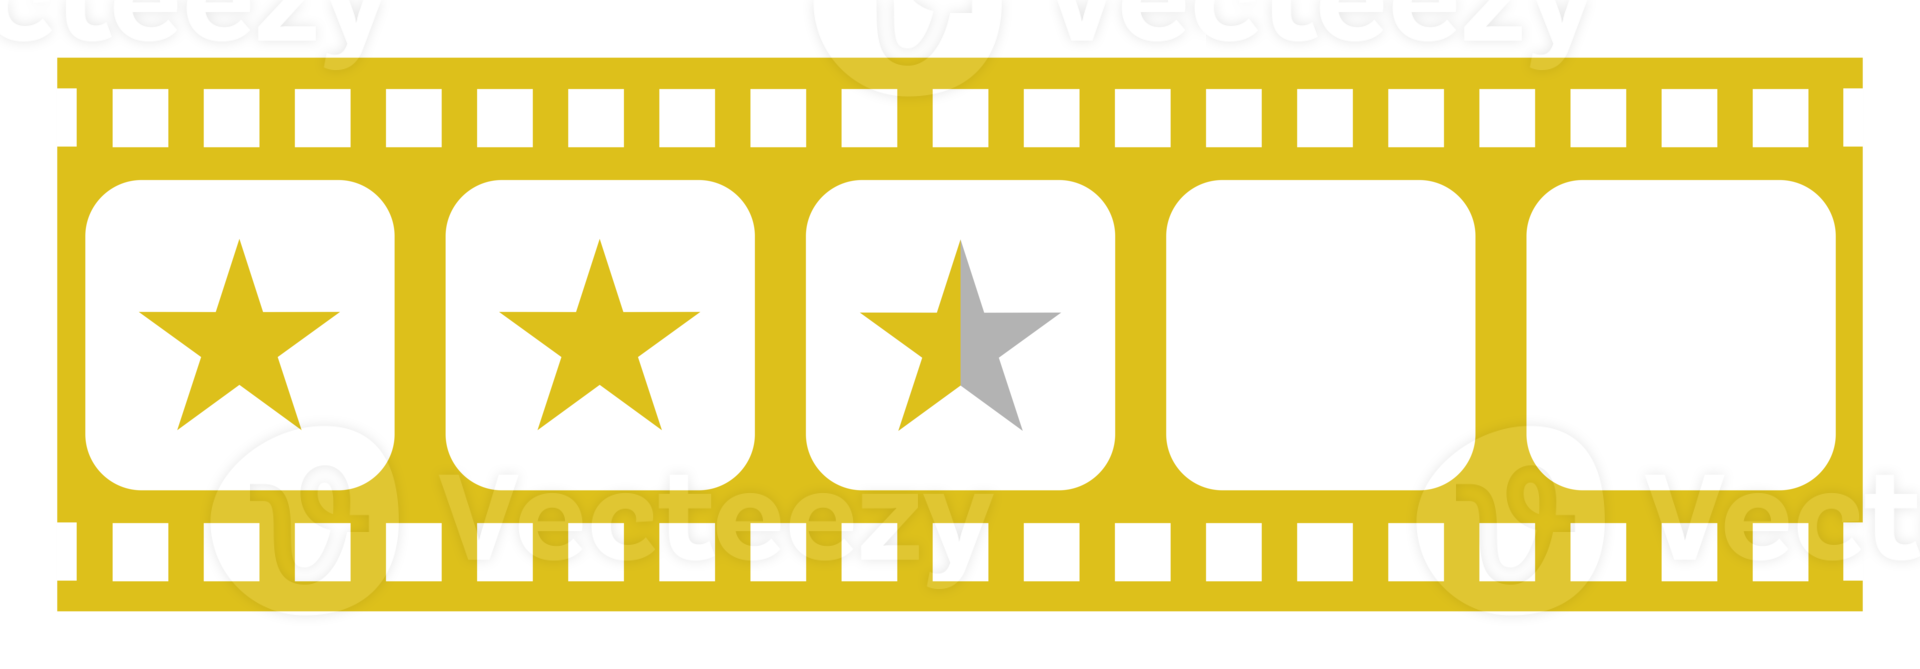 visual do signo de cinco 5 estrelas na silhueta da faixa do filme. símbolo de ícone de classificação por estrelas para revisão de filme ou filme, pictograma, aplicativos, site ou elemento de design gráfico. classificação 2,5 estrelas. formato png